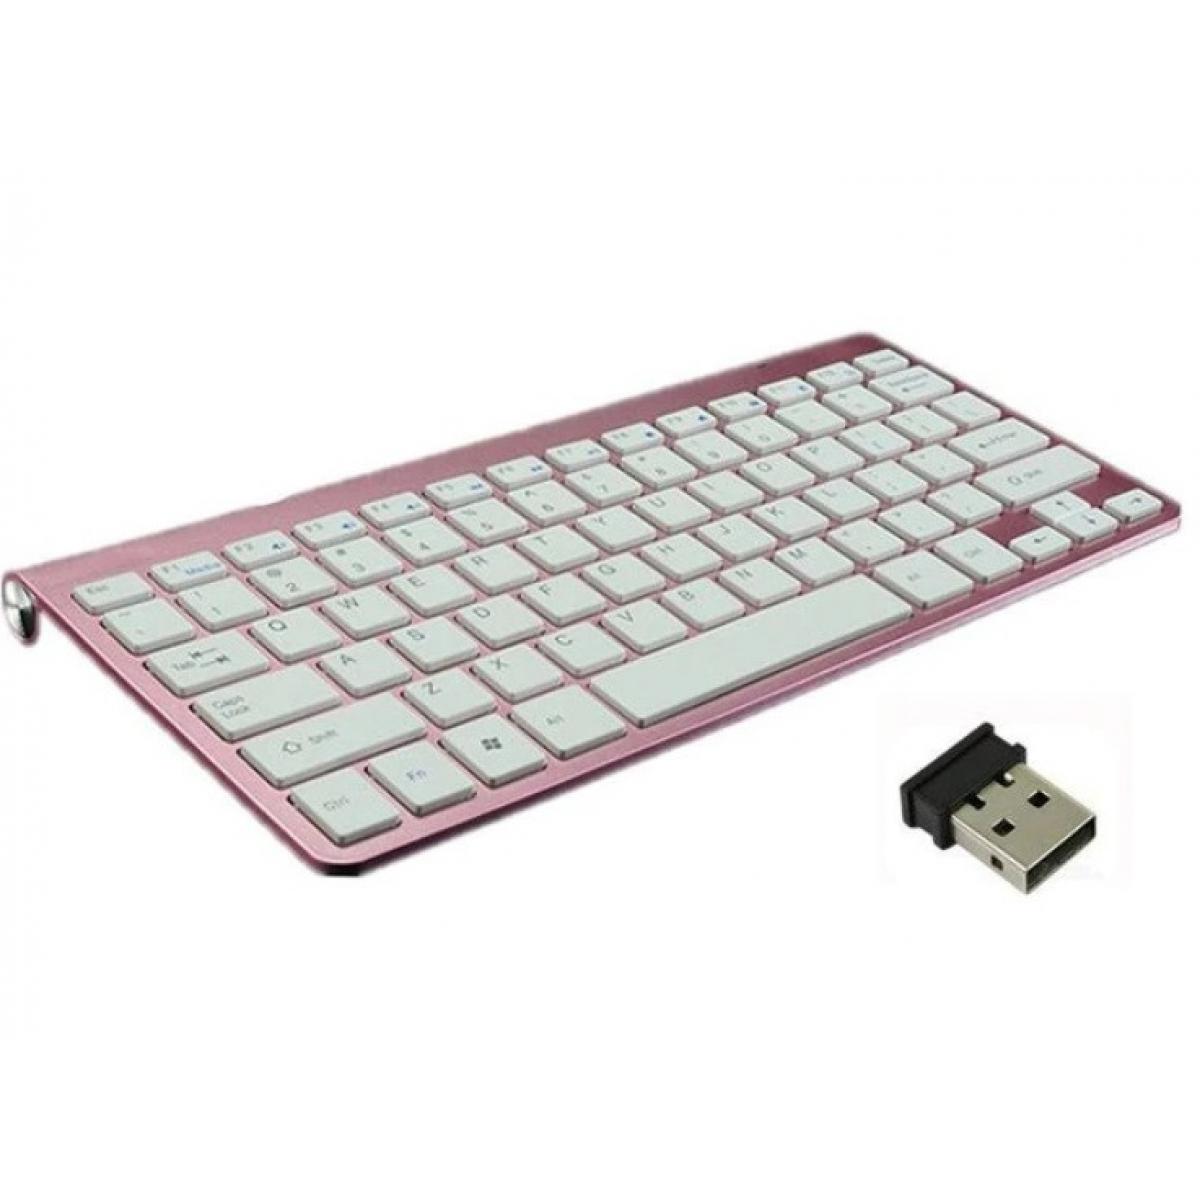 Shot - Clavier Sans Fil Metal pour PC YONIS USB QWERTY Piles (ROSE) - Clavier